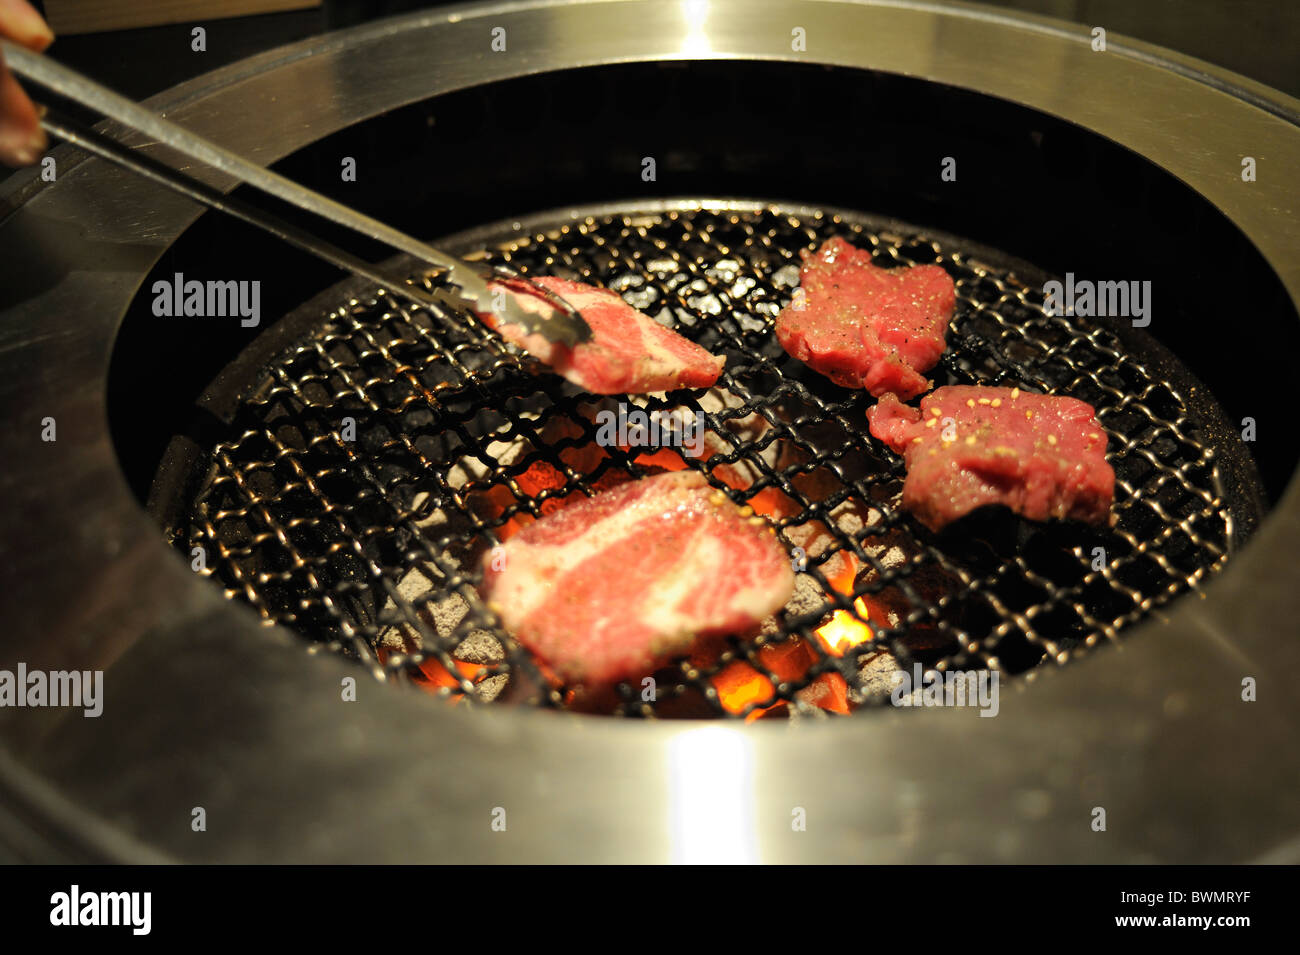 Eine koreanische Grill Restaurant Schirmherr Rindfleisch auf den Tischgrill  Grillen. Tokio, Japan Stockfotografie - Alamy